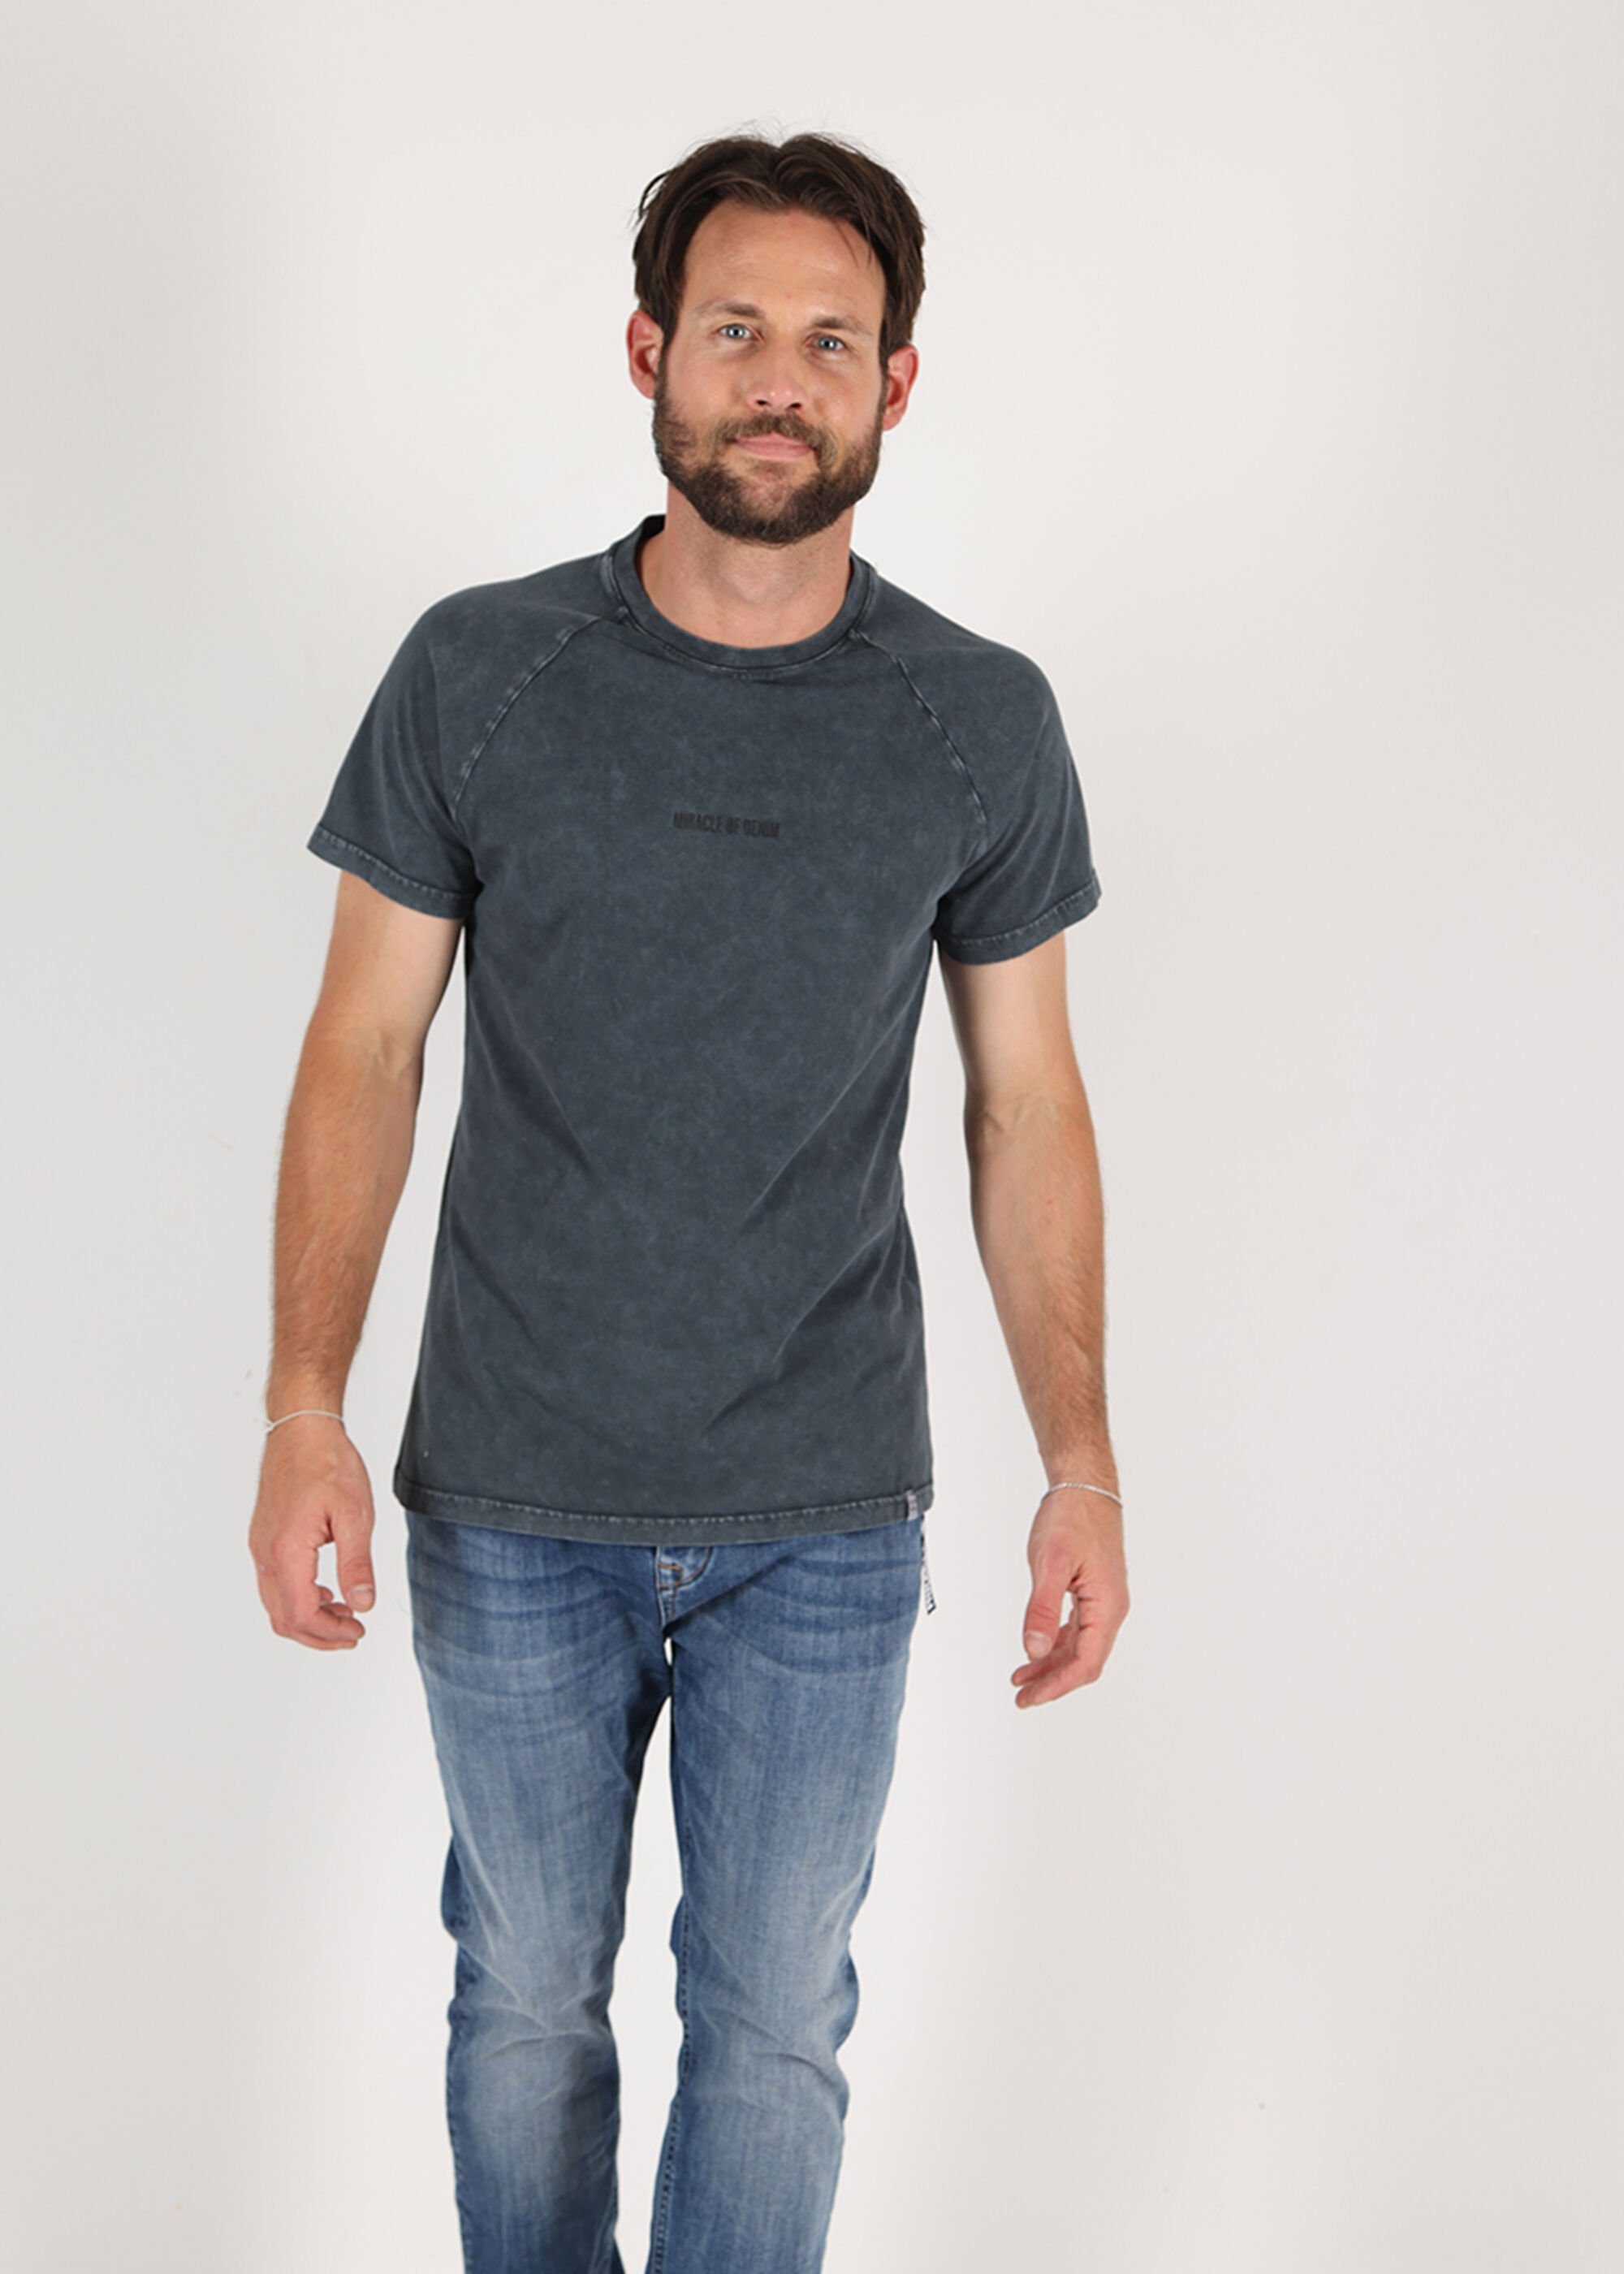 Denim unifarbenen Anthra Design im Miracle of T-Shirt